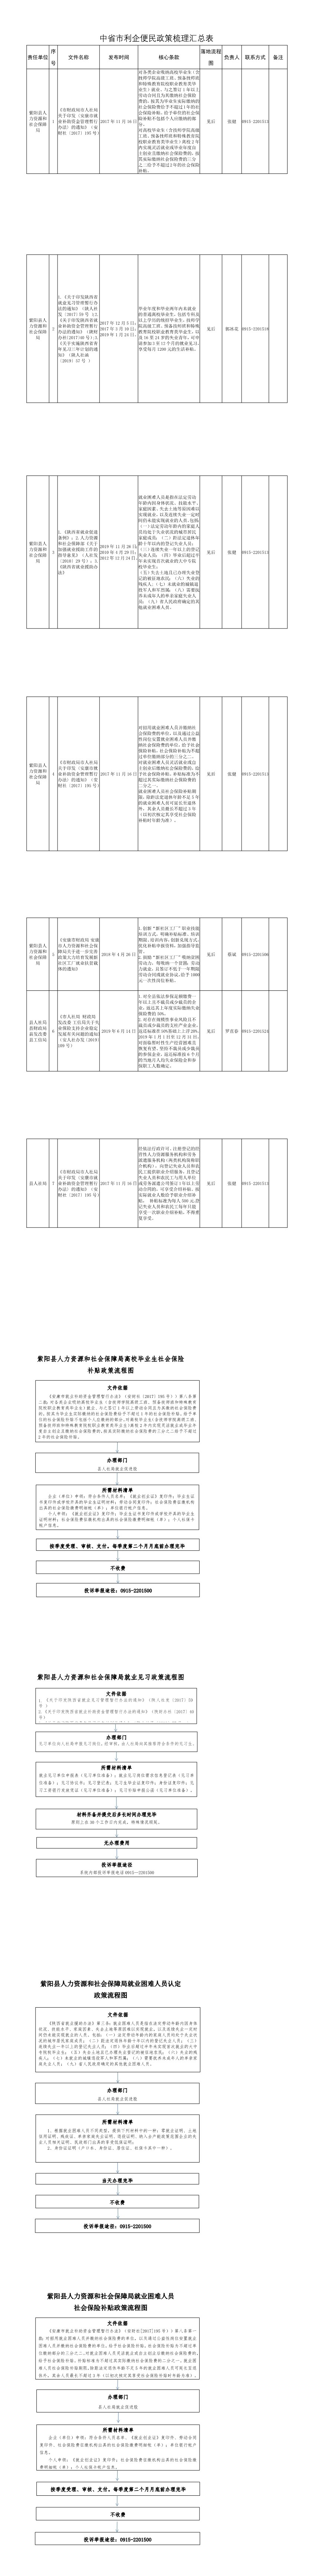 【利企便民政策】县人社局(1-10).jpg